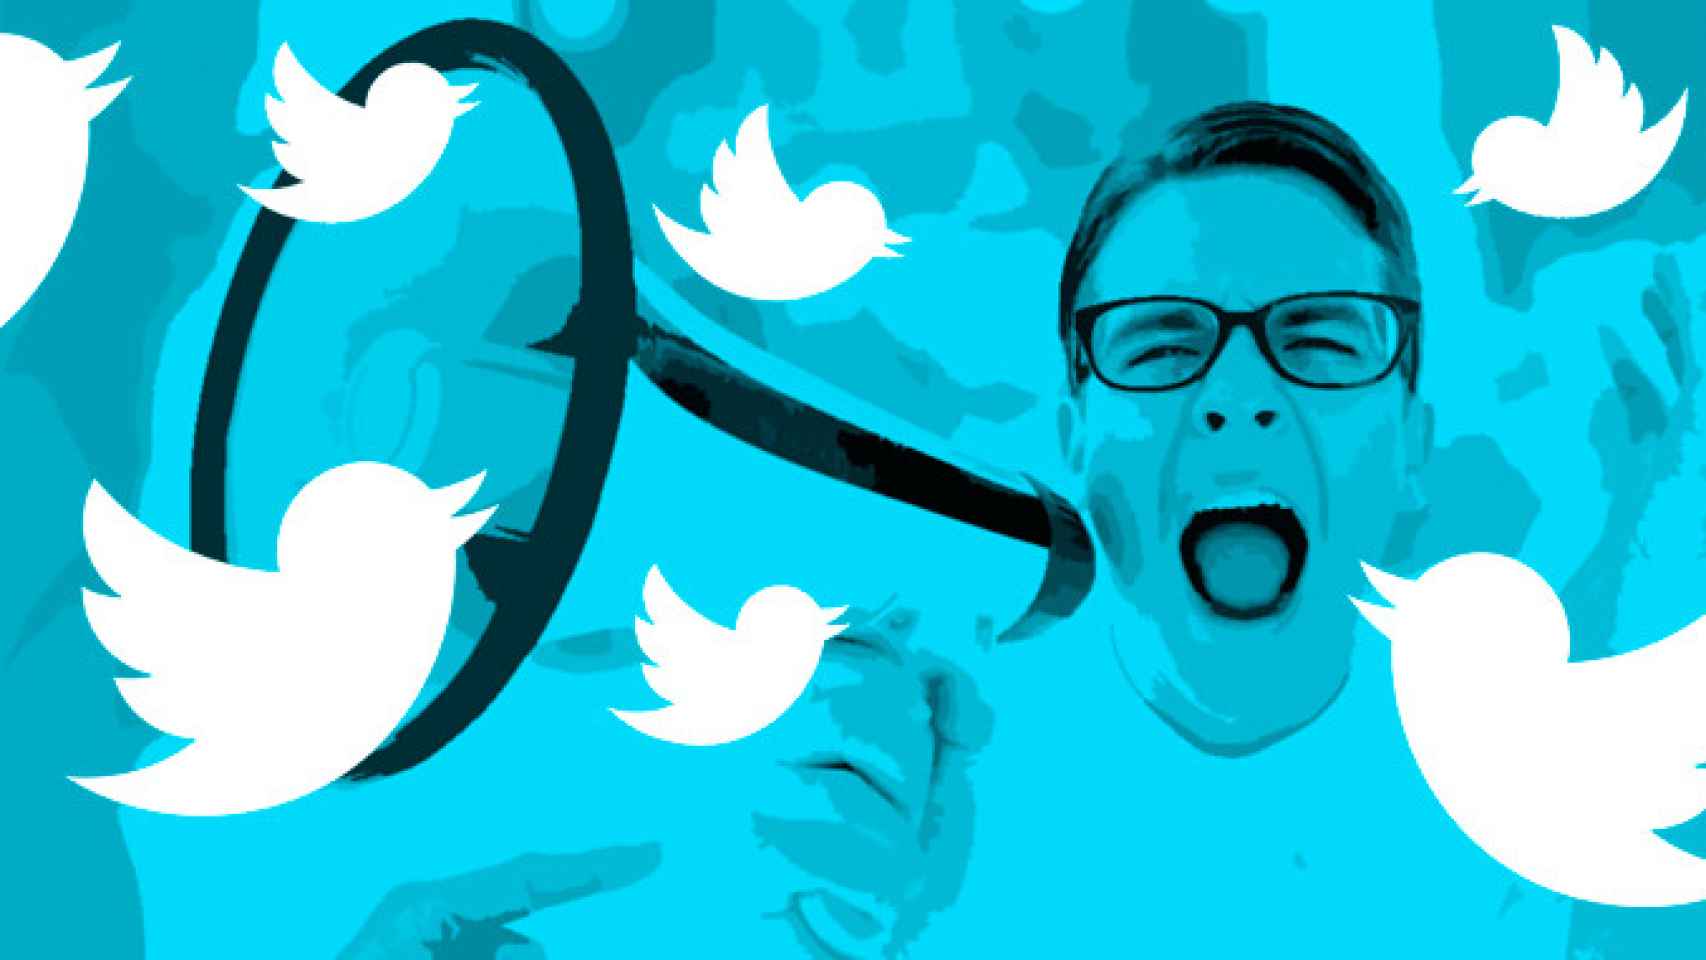 Un chico gritando con un altavoz entre logos de Twitter / FOTOMONTAJE DE CG